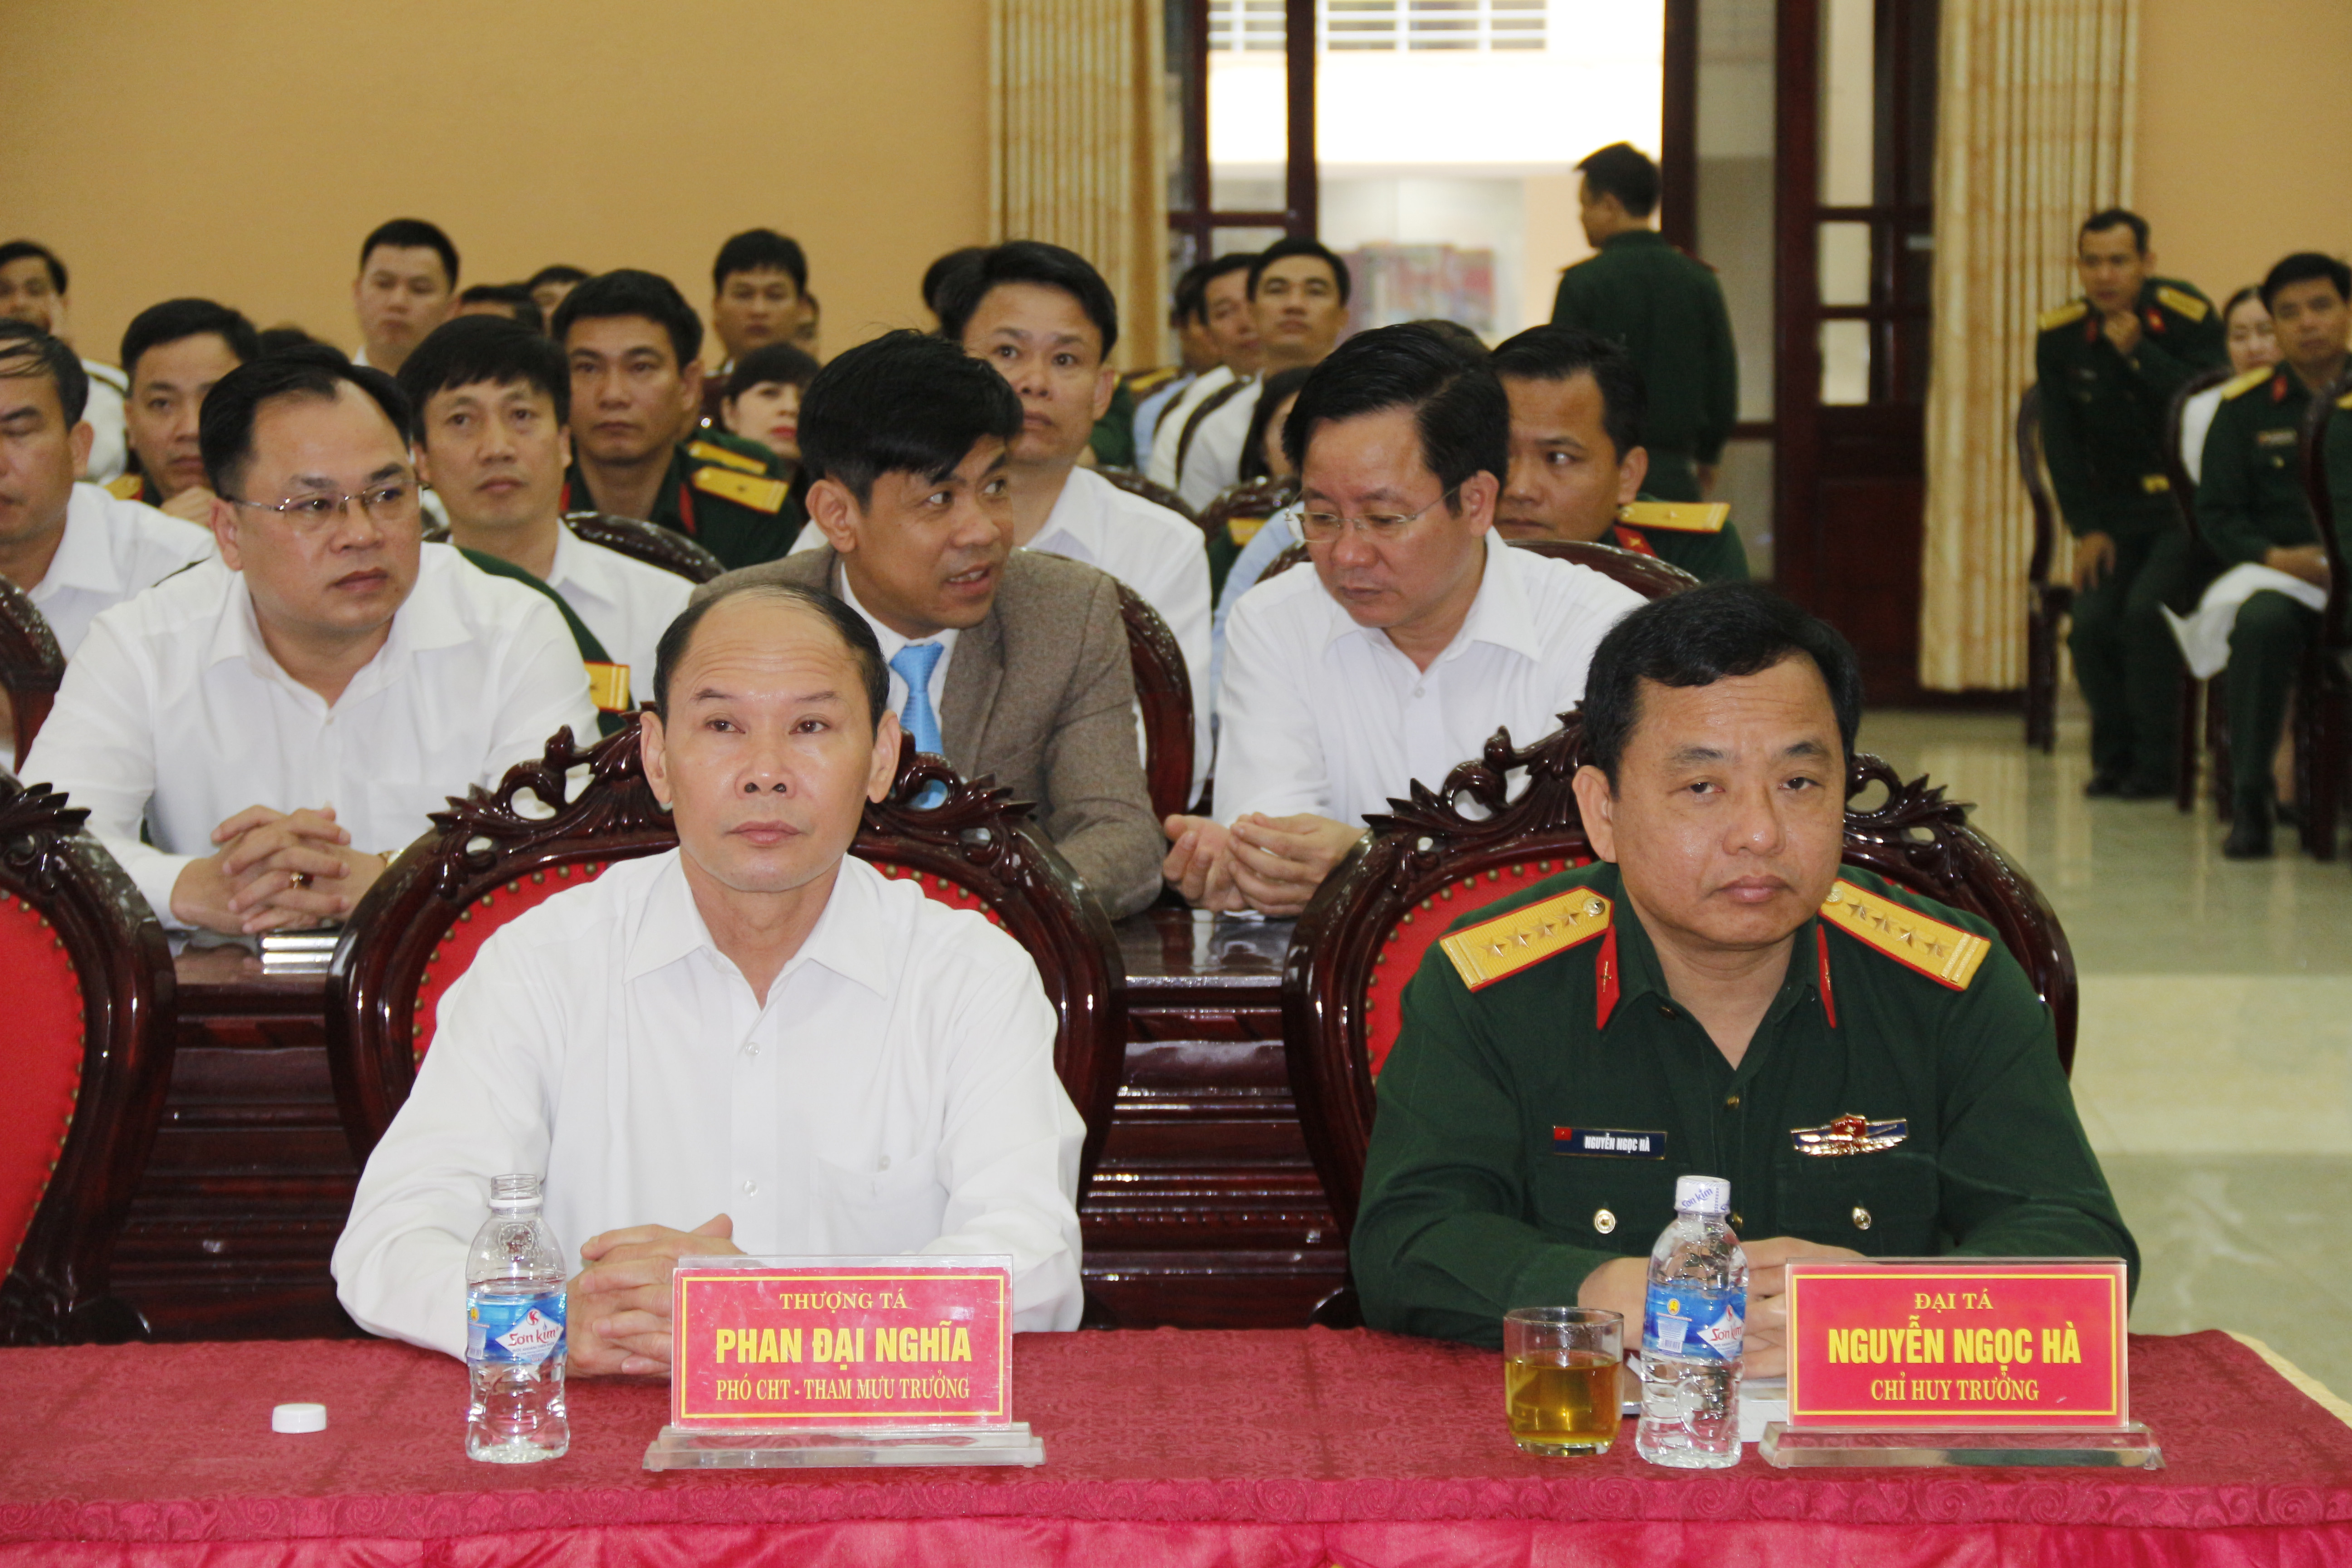 Dự và chỉ đạo có đồng chí Đại tá Nguyễn Ngọc Hà, Ủy viên BTV Tỉnh ủy – Chỉ huy trưởng Bộ CHQS tỉnh.